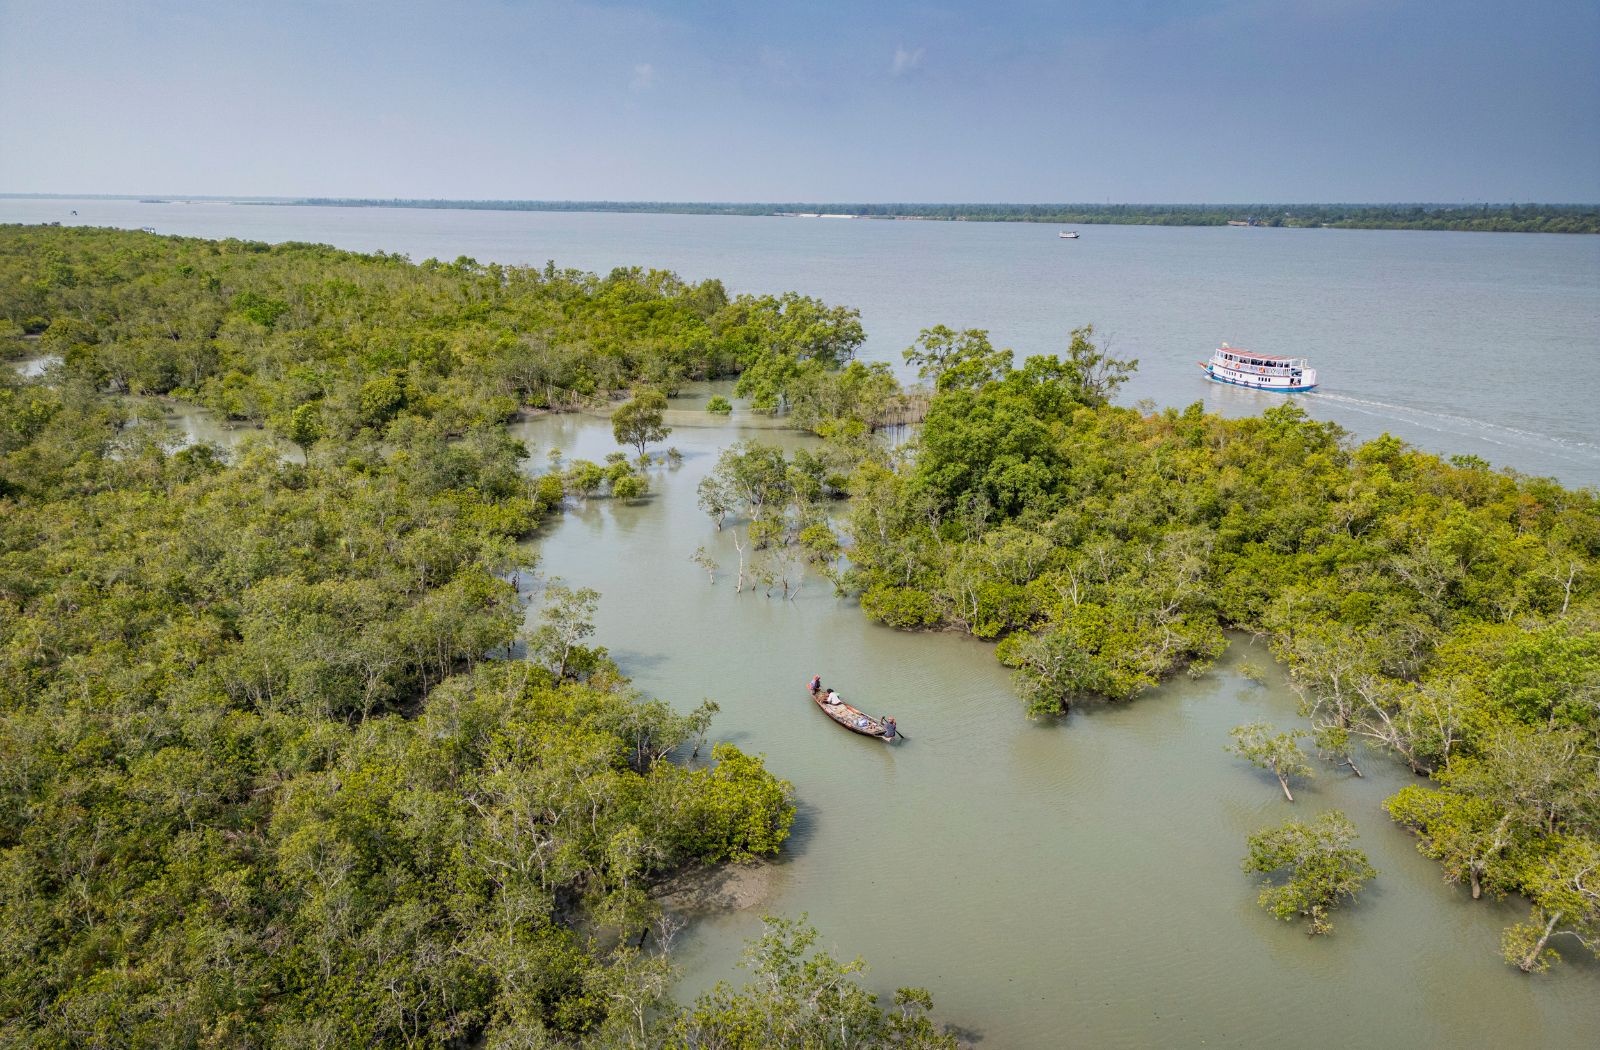 Thurgau Ganga Vilas: Die Weiten der Sundarbans